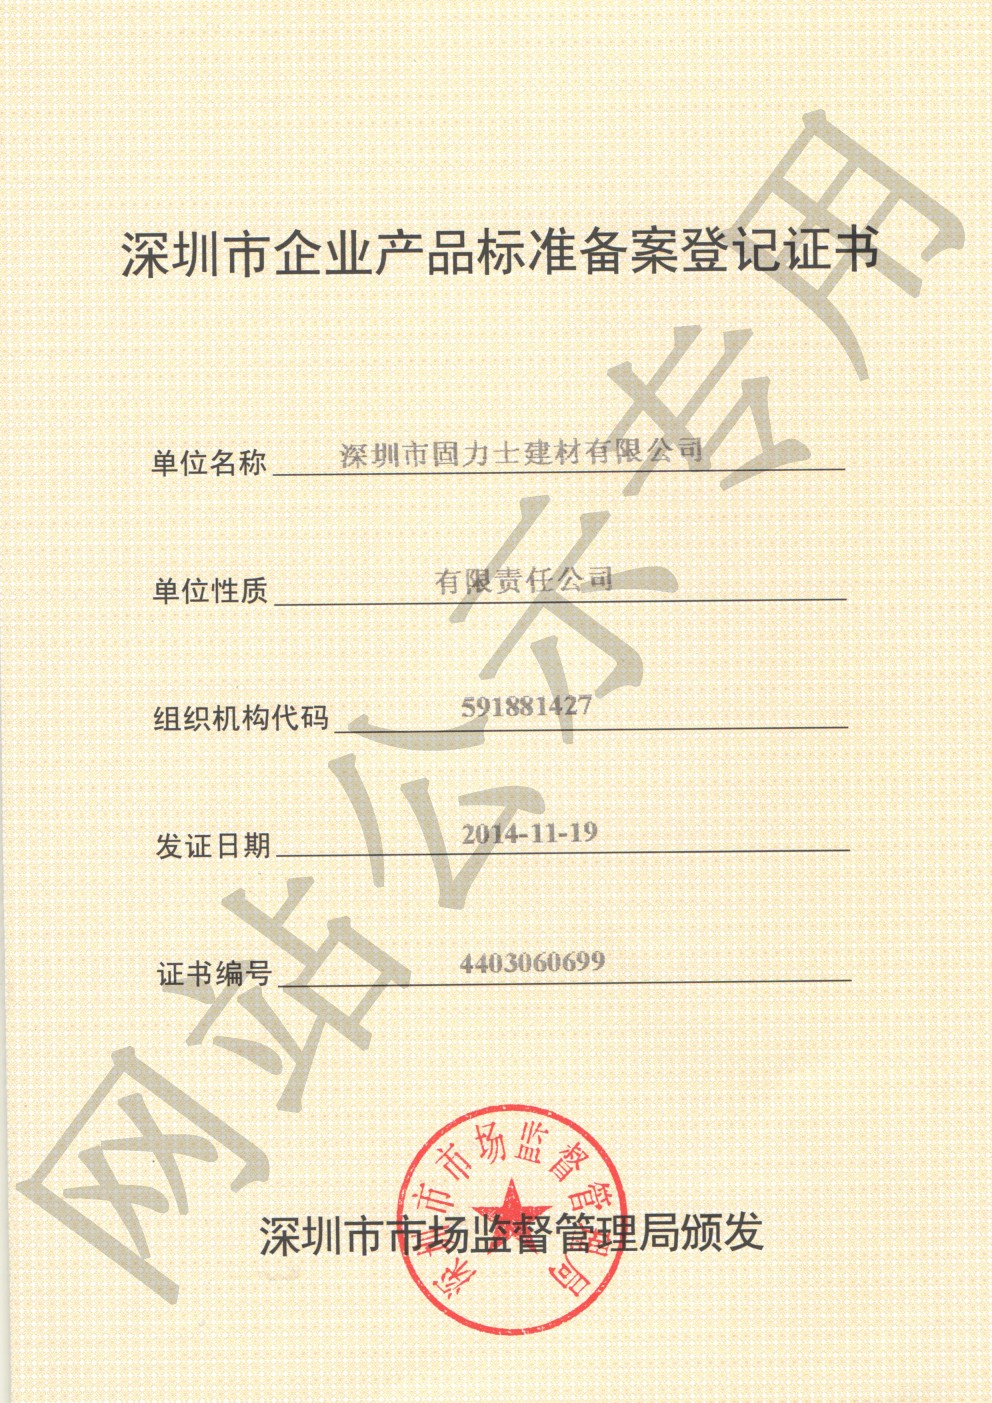 文昌企业产品标准登记证书